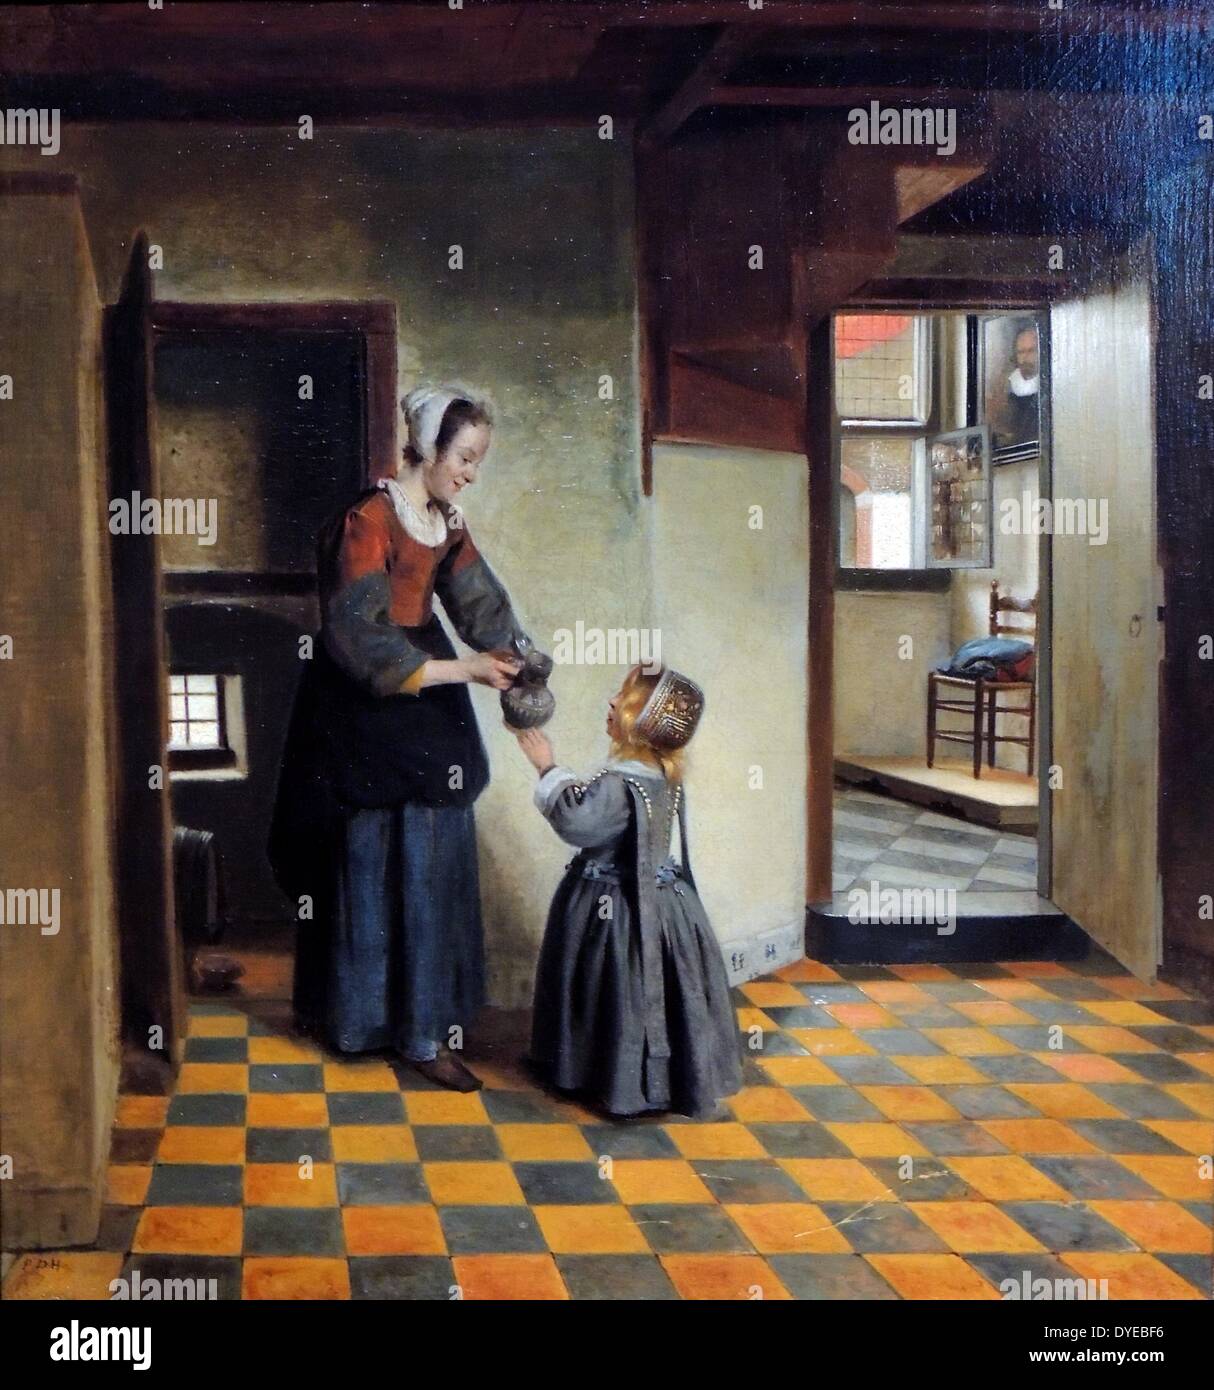 Frau mit einem Kind in einem Vorratsraum, Pieter de Hooch (1629-ca 1683) Öl auf Leinwand C. 1656-1660. Pieter de Hooch arbeitete in Delft für ein paar Jahre zur gleichen Zeit wie Johannes Vermeer. Beide Künstler wurden von, wie man Licht und Raum machen fasziniert. Stockfoto